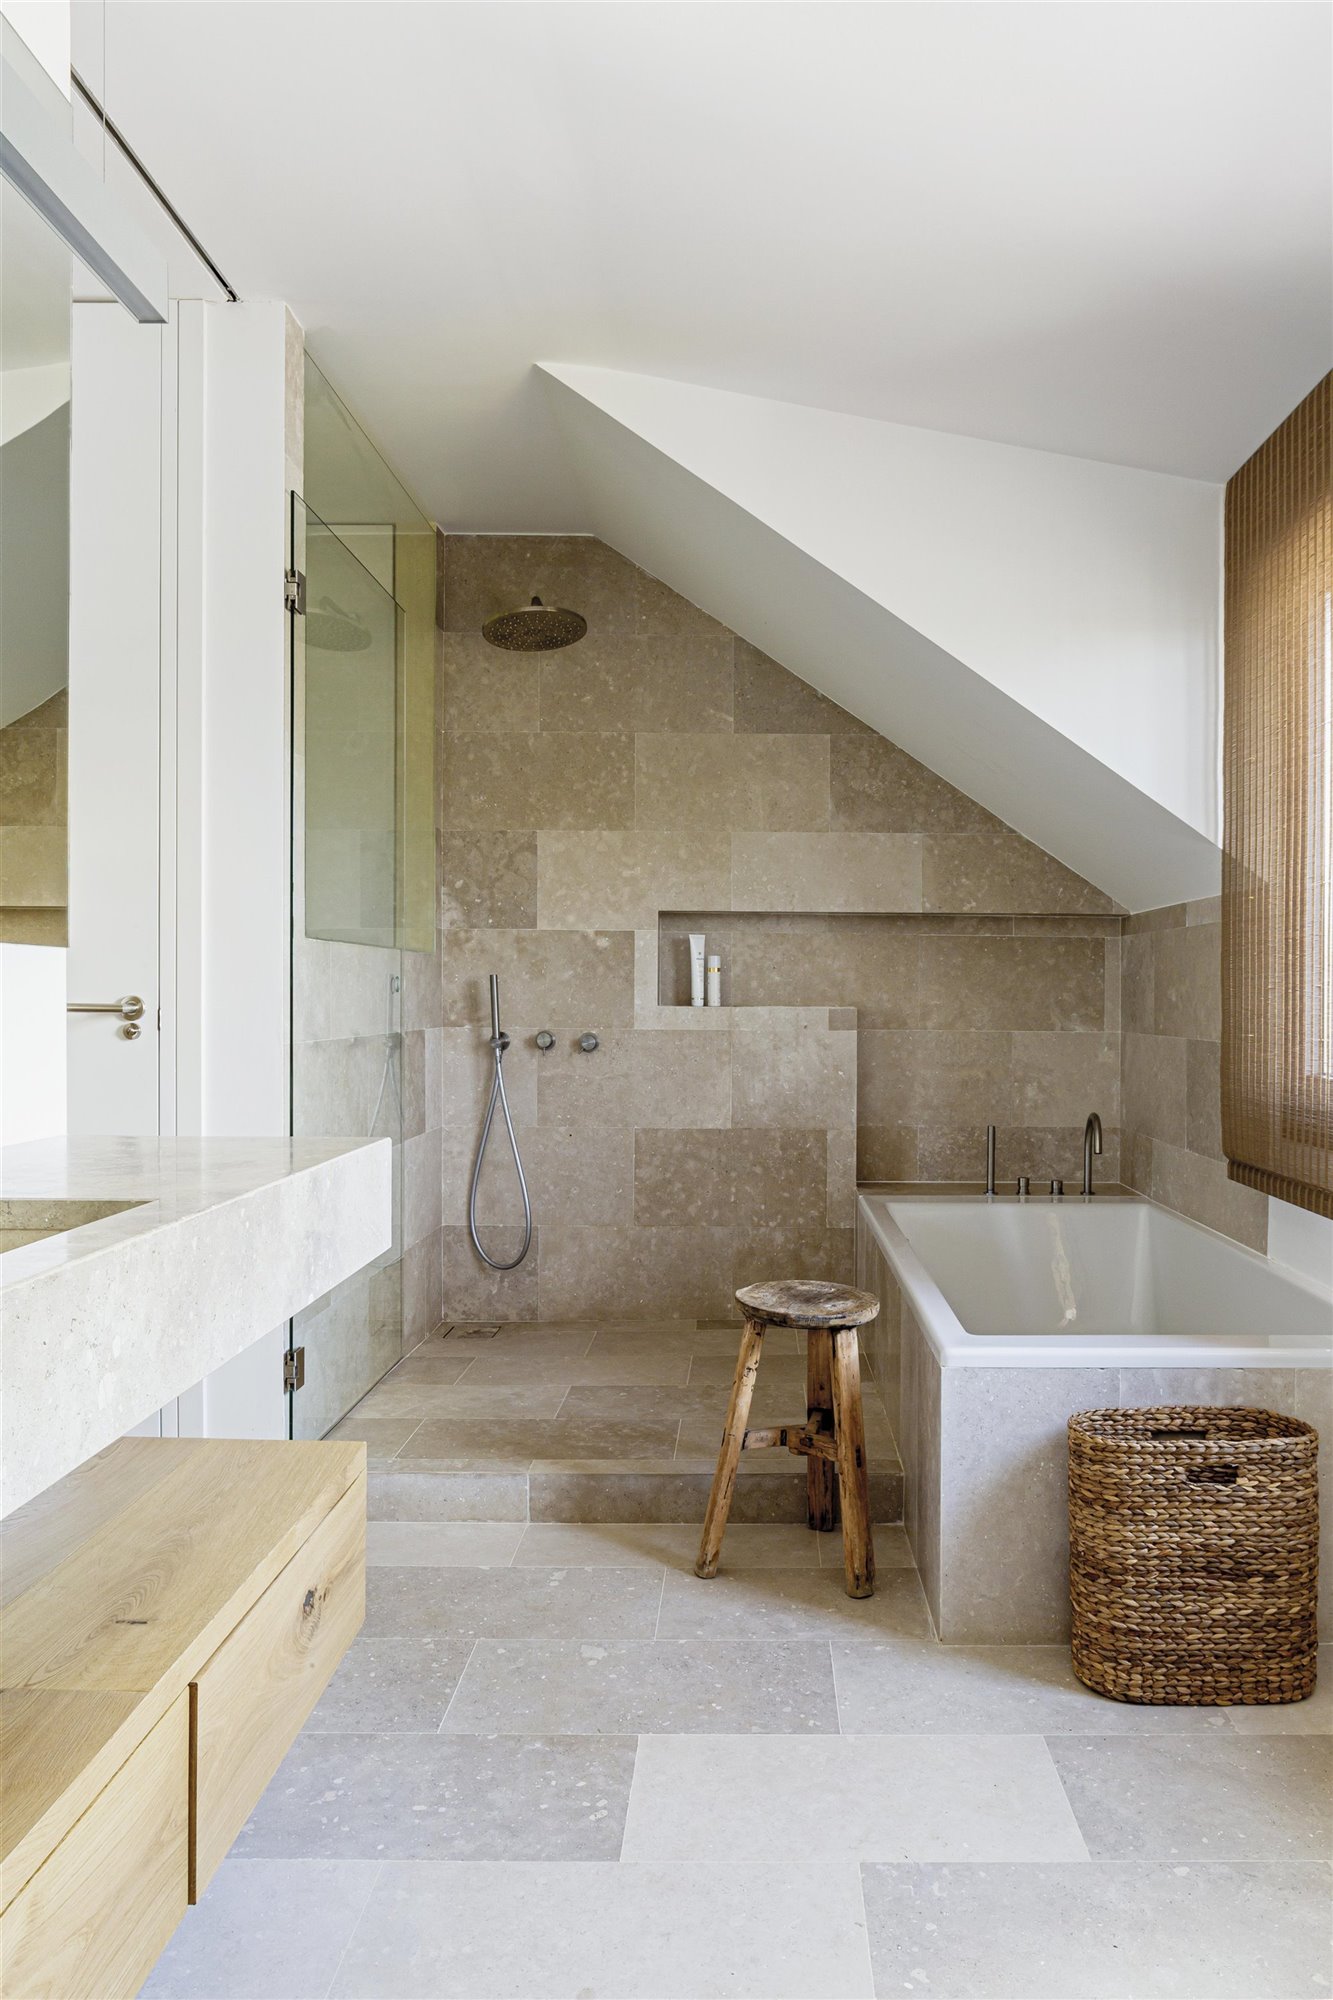 baño de piedra con bañera, cesto de mimbre y taburete de madera